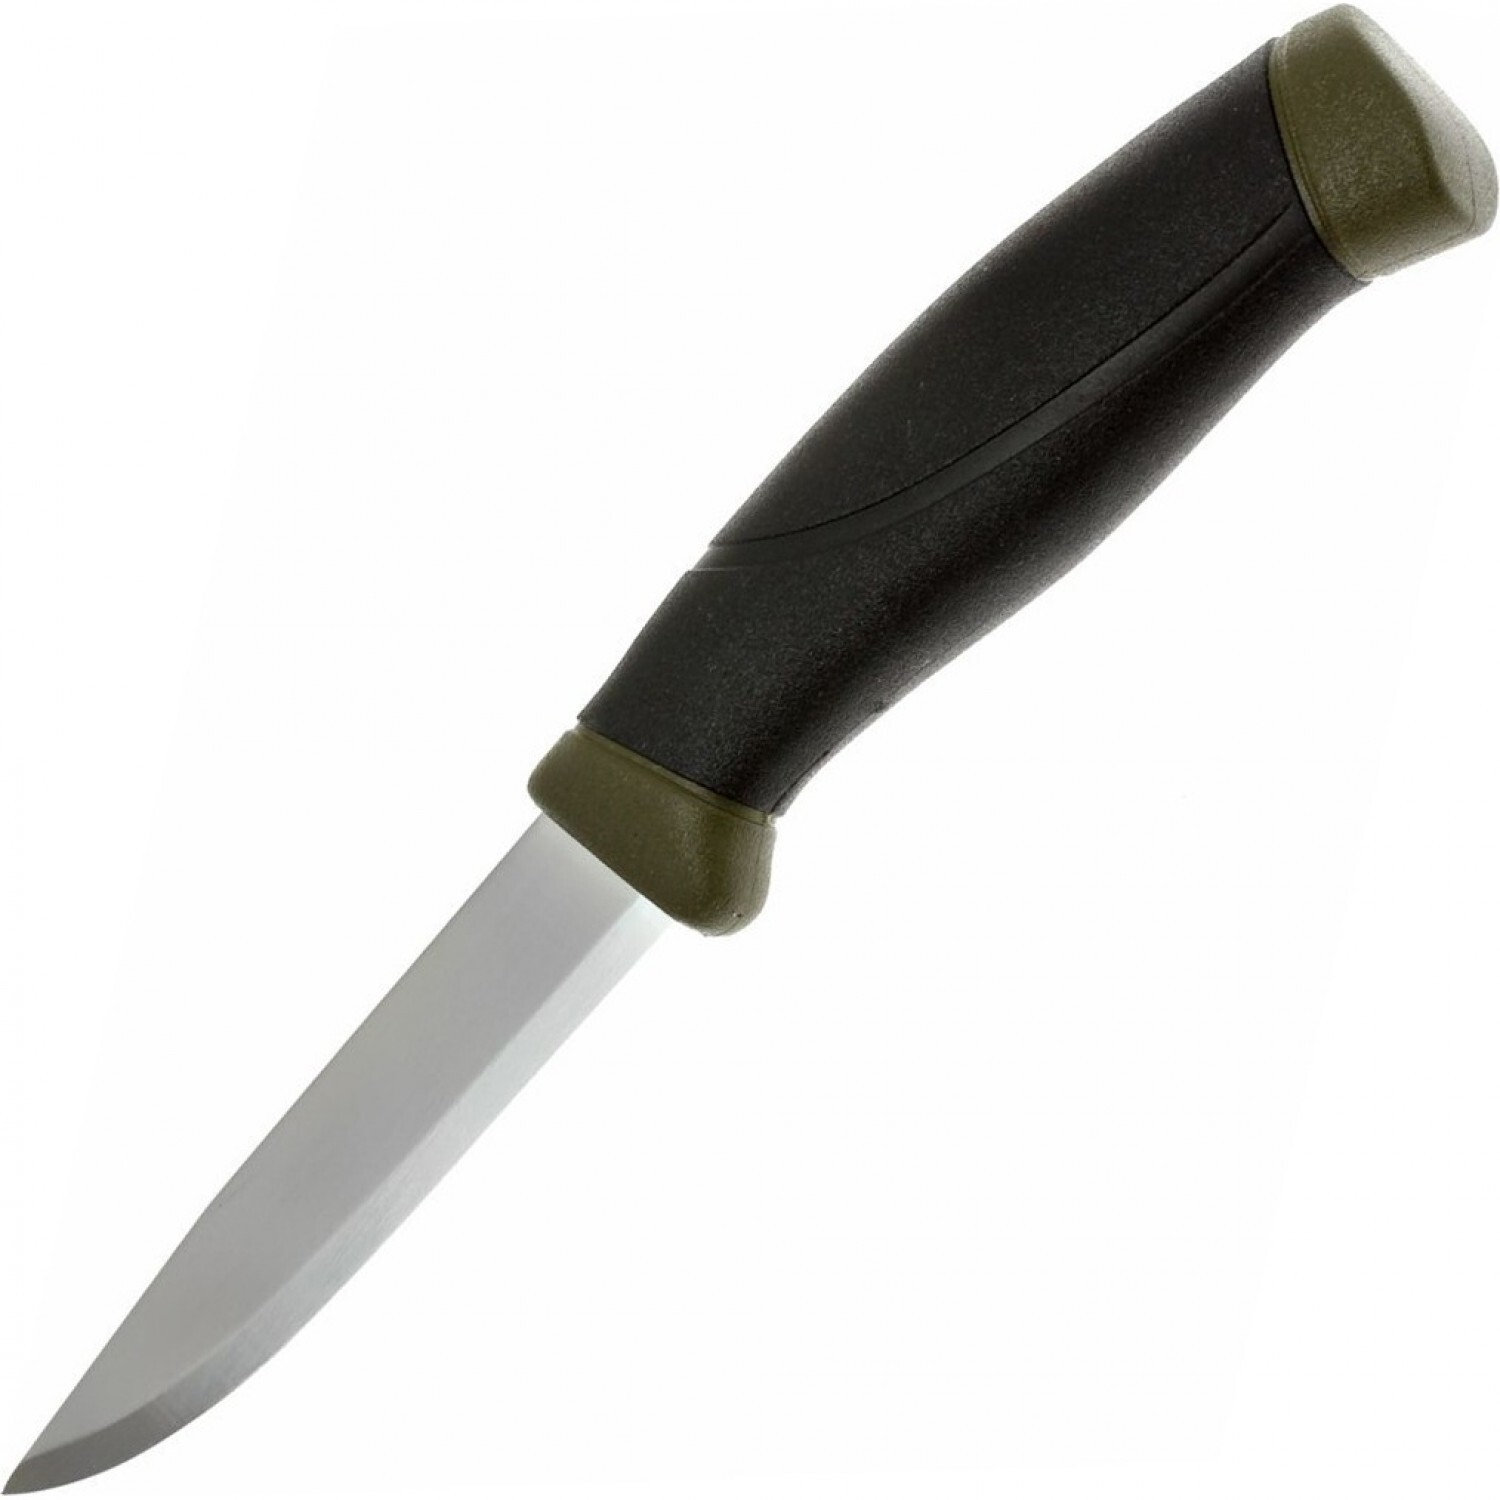 Нож с фиксированным лезвием Morakniv Companion MG (C), углеродистая сталь, рукоять резина/пластик, цвет хаки нож companion f rescue 11828 morakniv